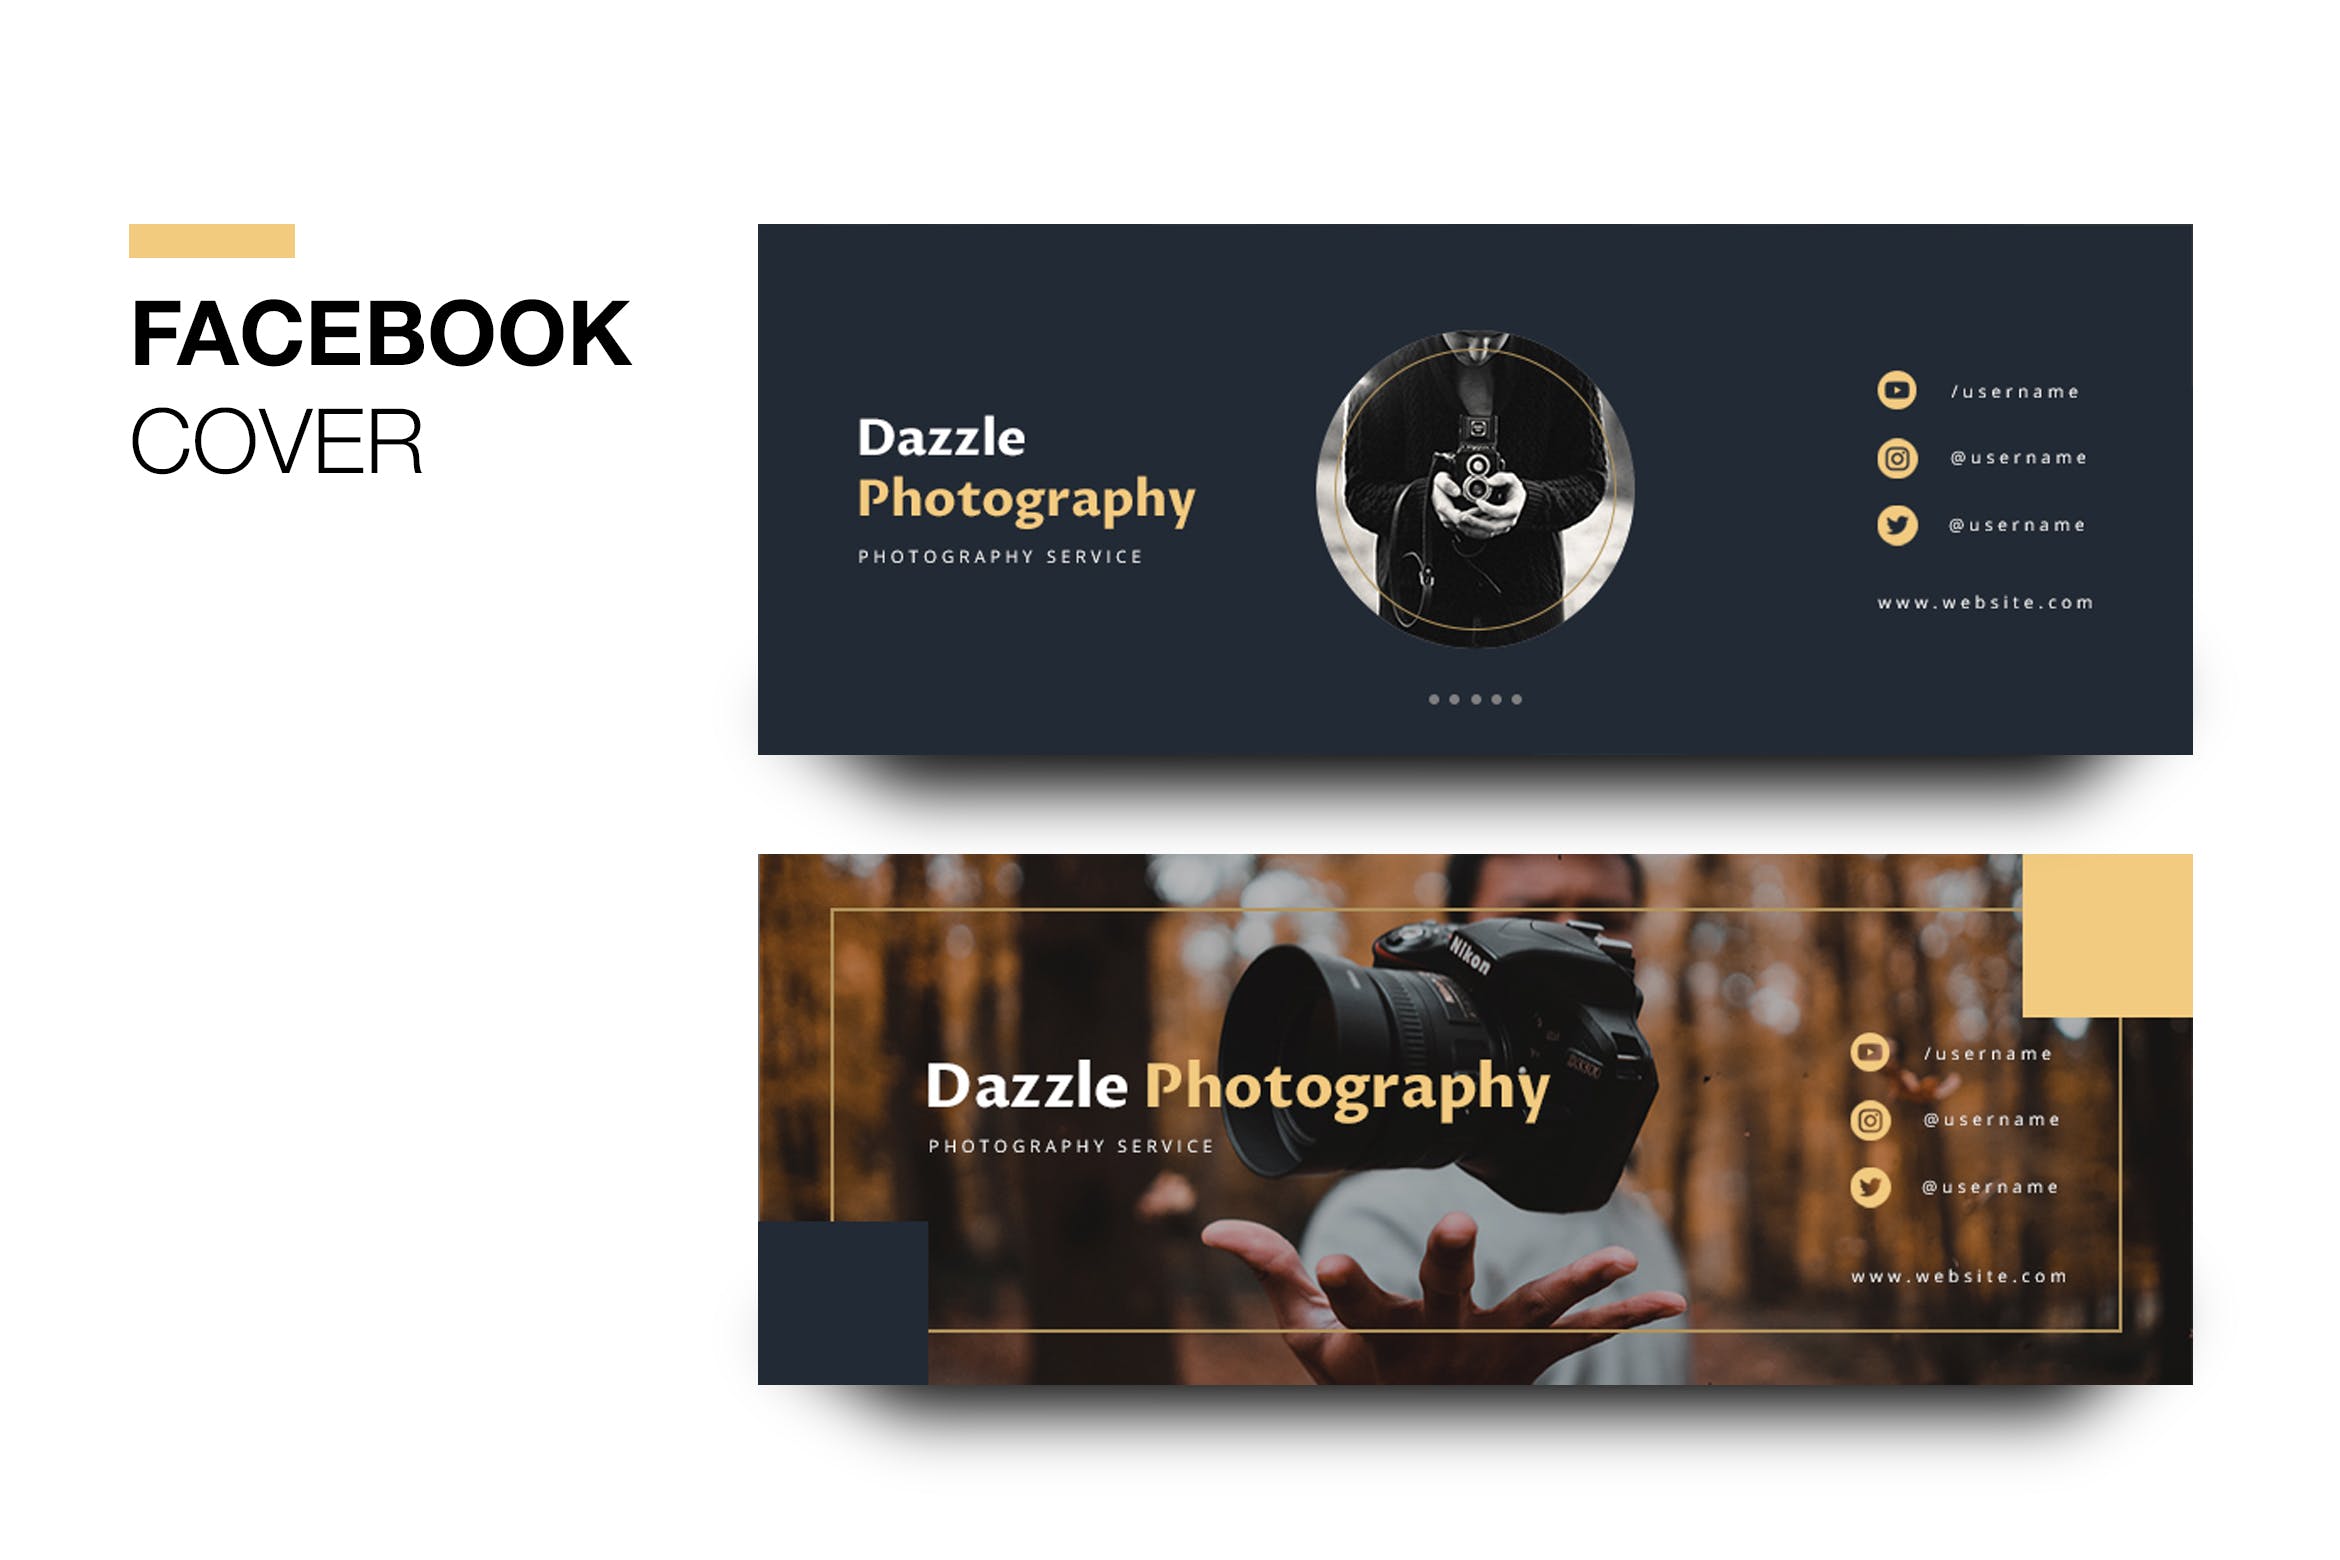 摄影品牌推广Facebook主页封面设计模板第一素材精选 Dazzle Photography Facebook Cover插图